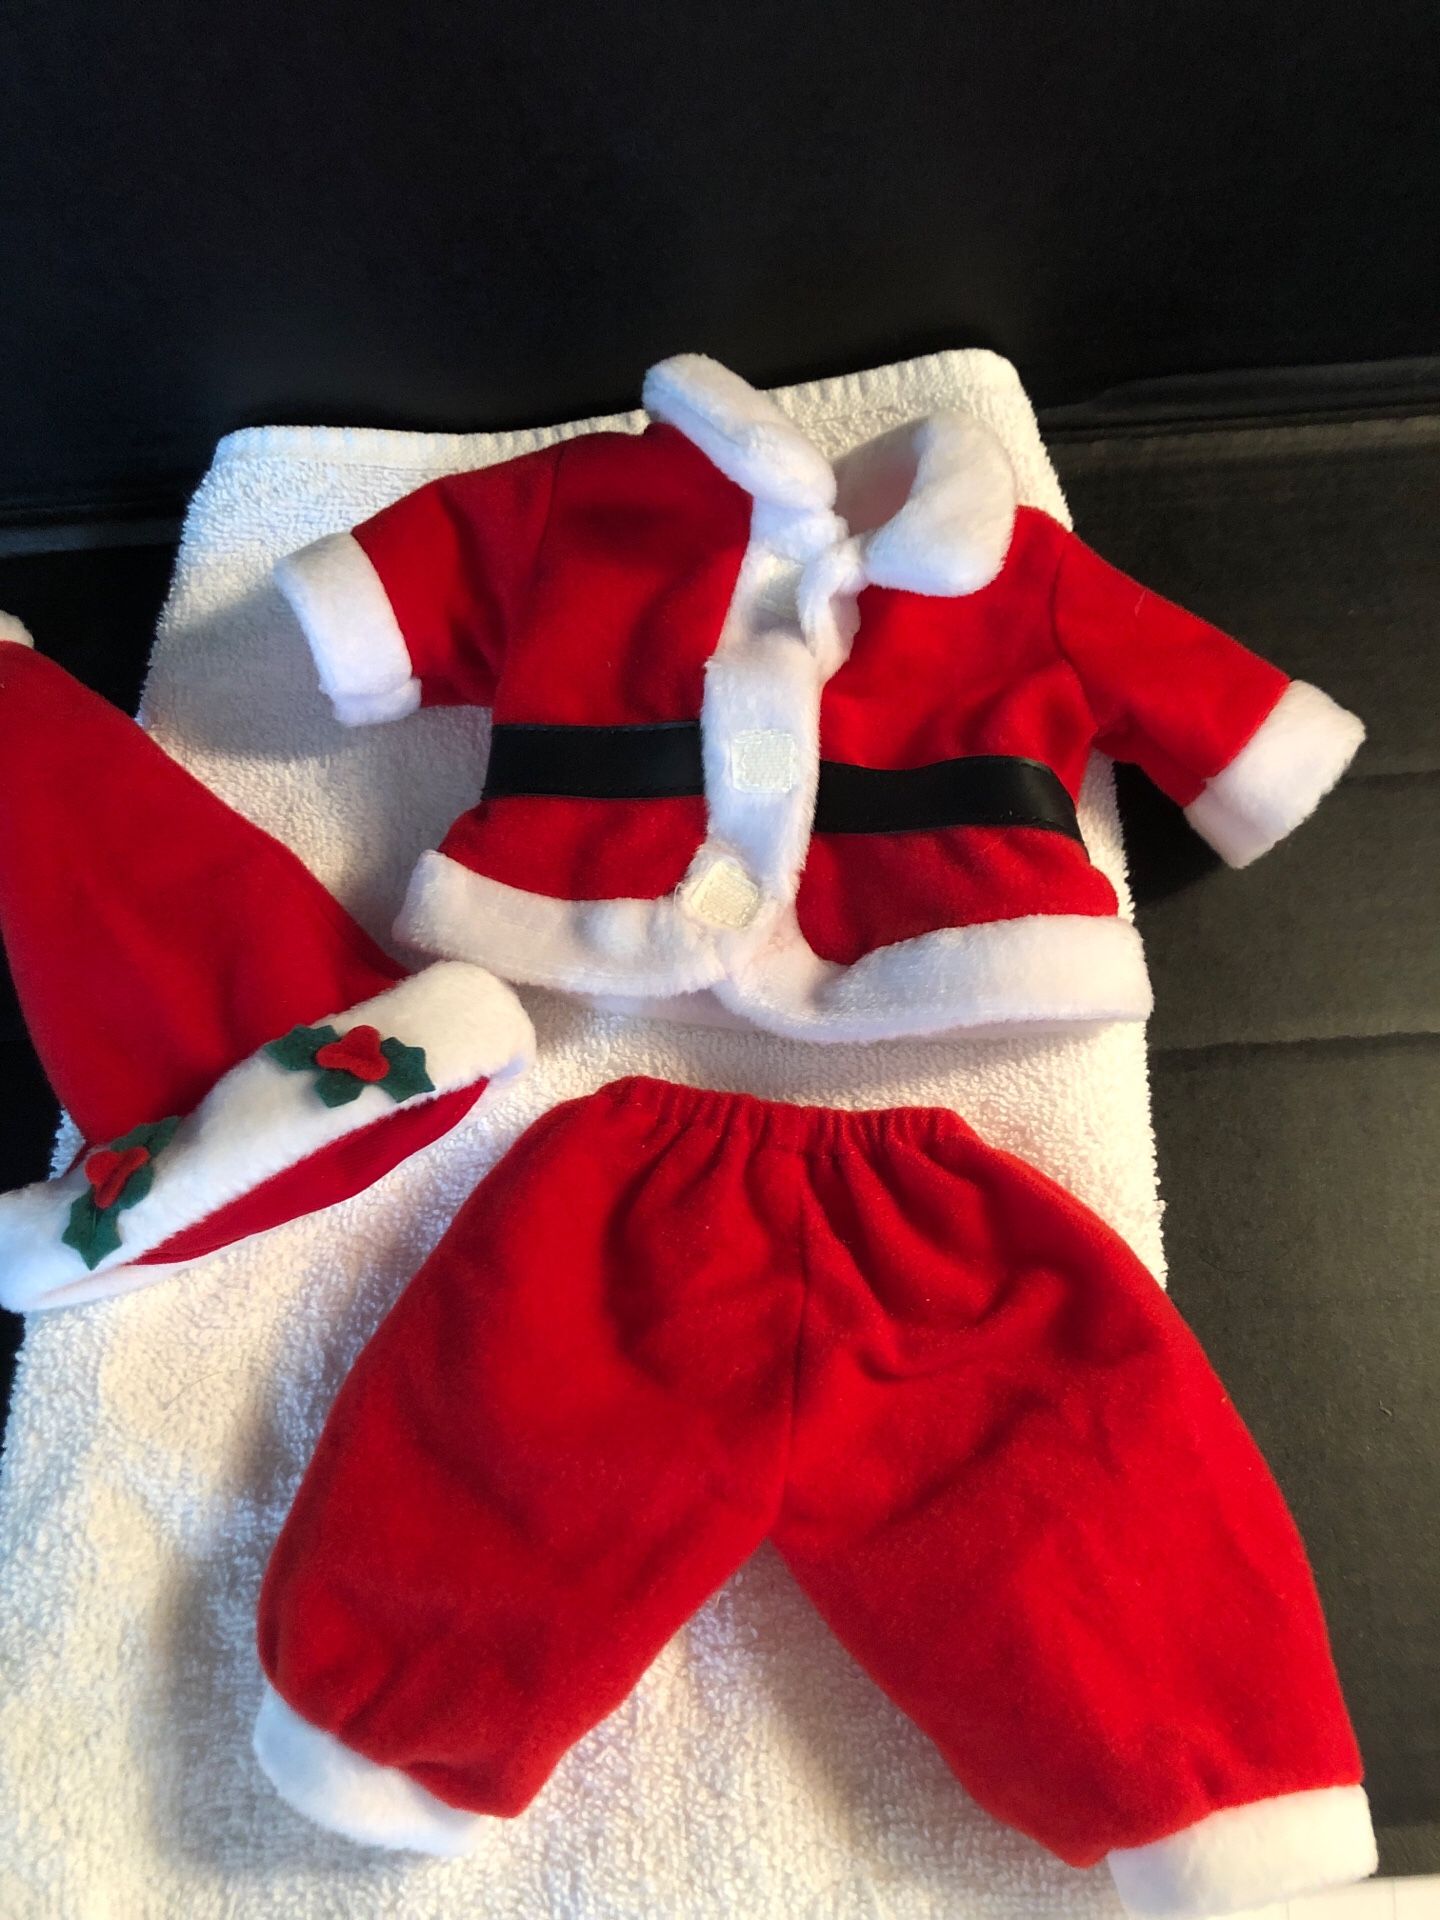 Beanie babies Santa suit